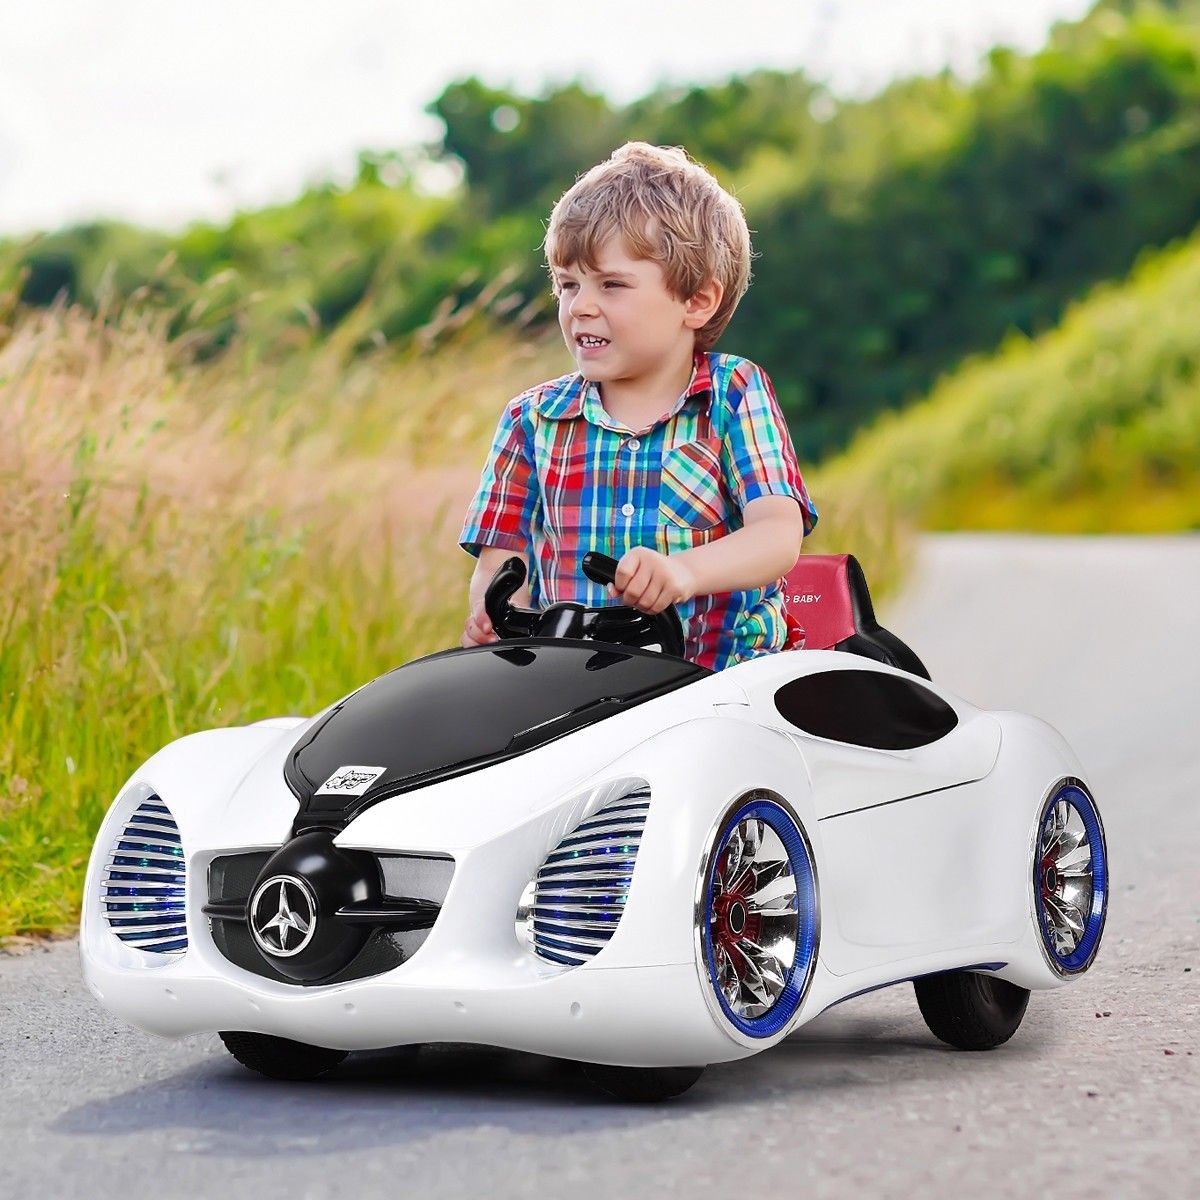 Aventures en plein air : explorer la nature avec des voitures pour enfants pour conduire